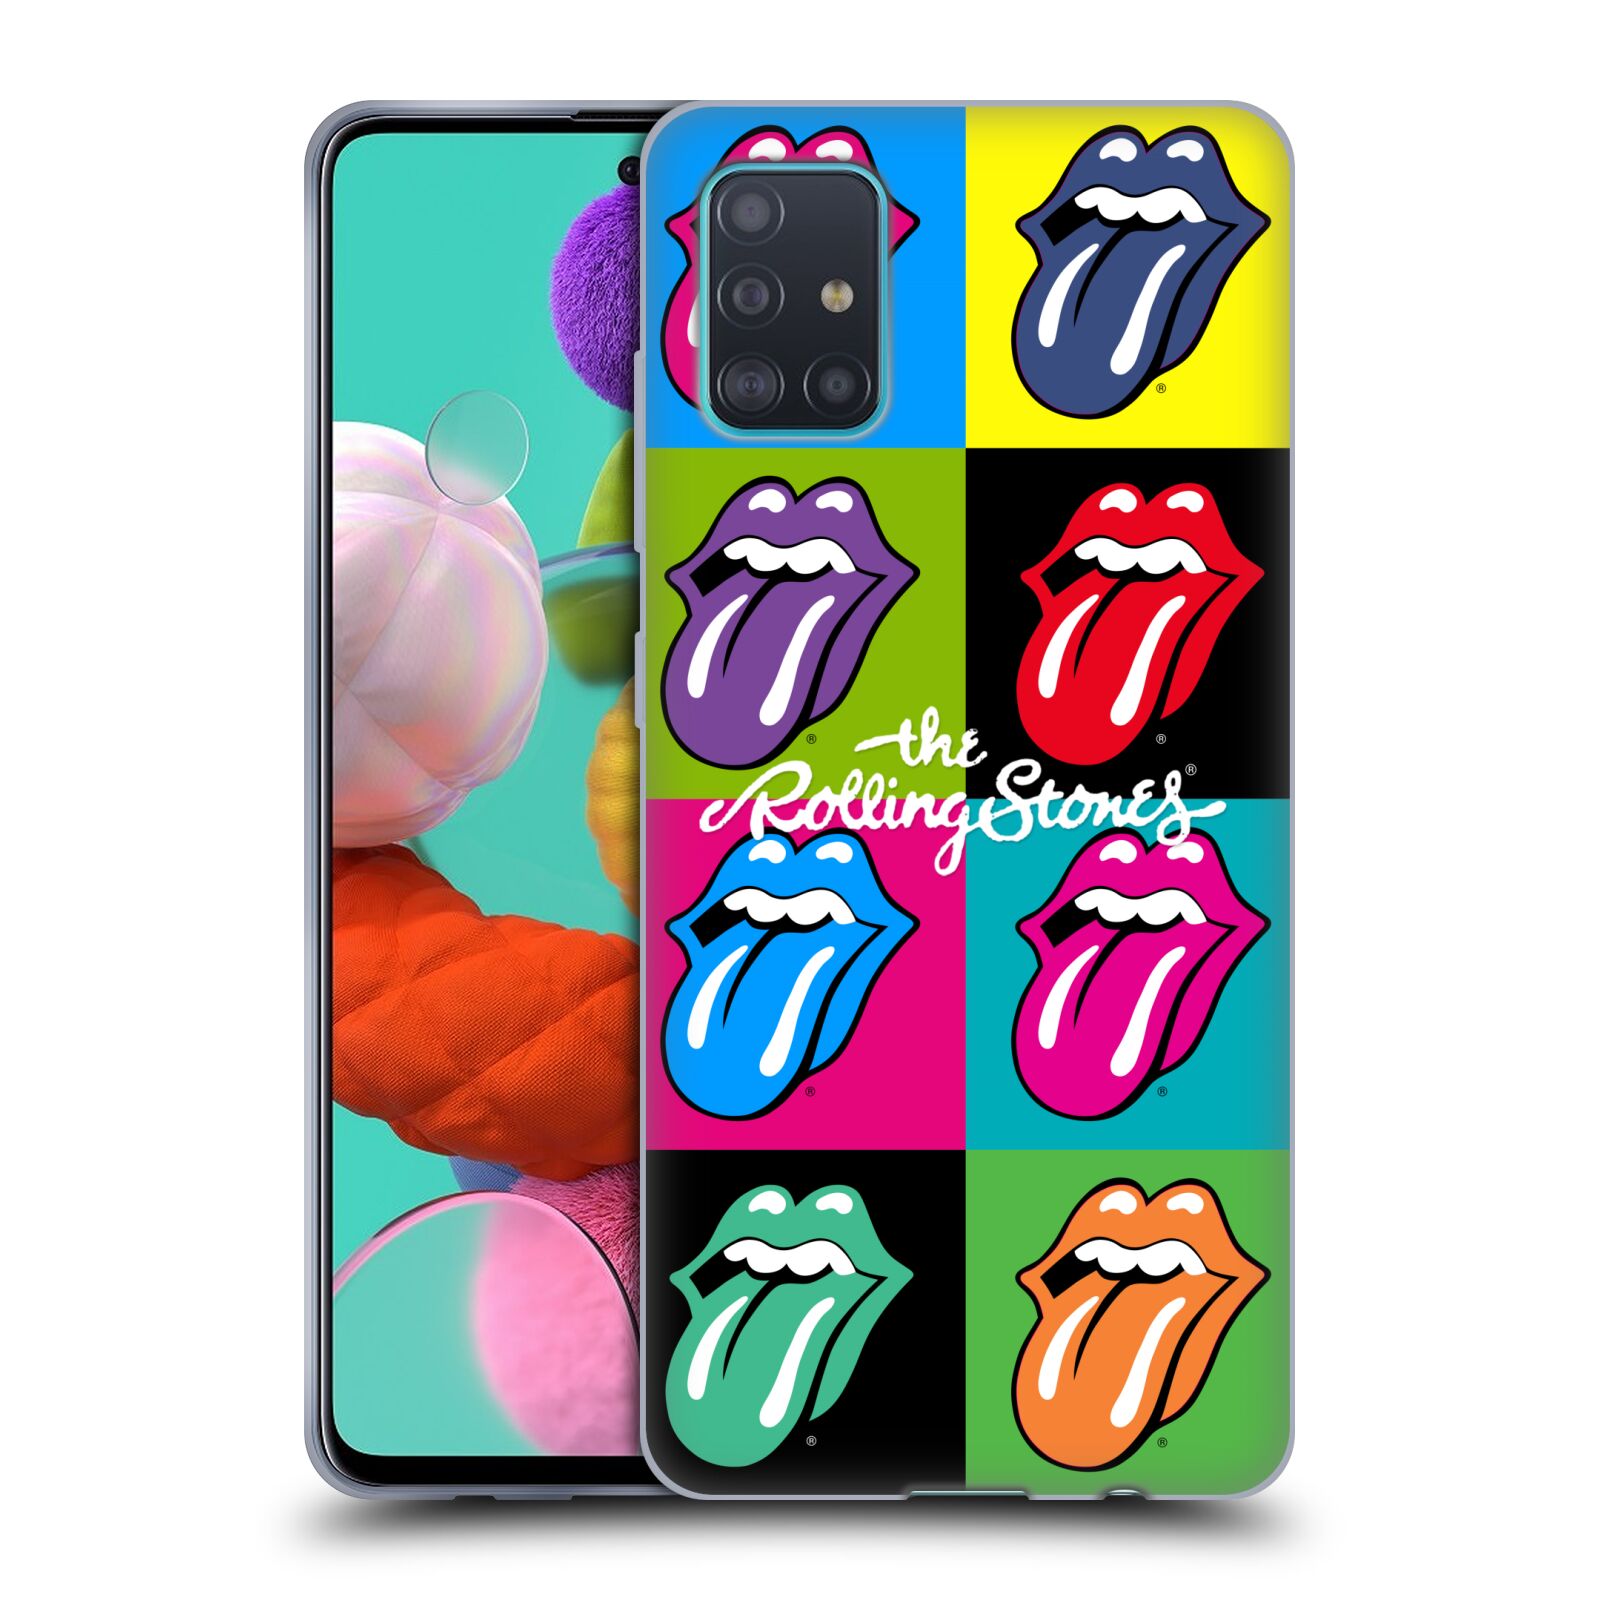 Silikonové pouzdro na mobil Samsung Galaxy A51 - Head Case - The Rolling Stones - Pop Art Vyplazené Jazyky (Silikonový kryt, obal, pouzdro na mobilní telefon Samsung Galaxy A51 A515F Dual SIM s motivem The Rolling Stones - Pop Art Vyplazené Jazyky)